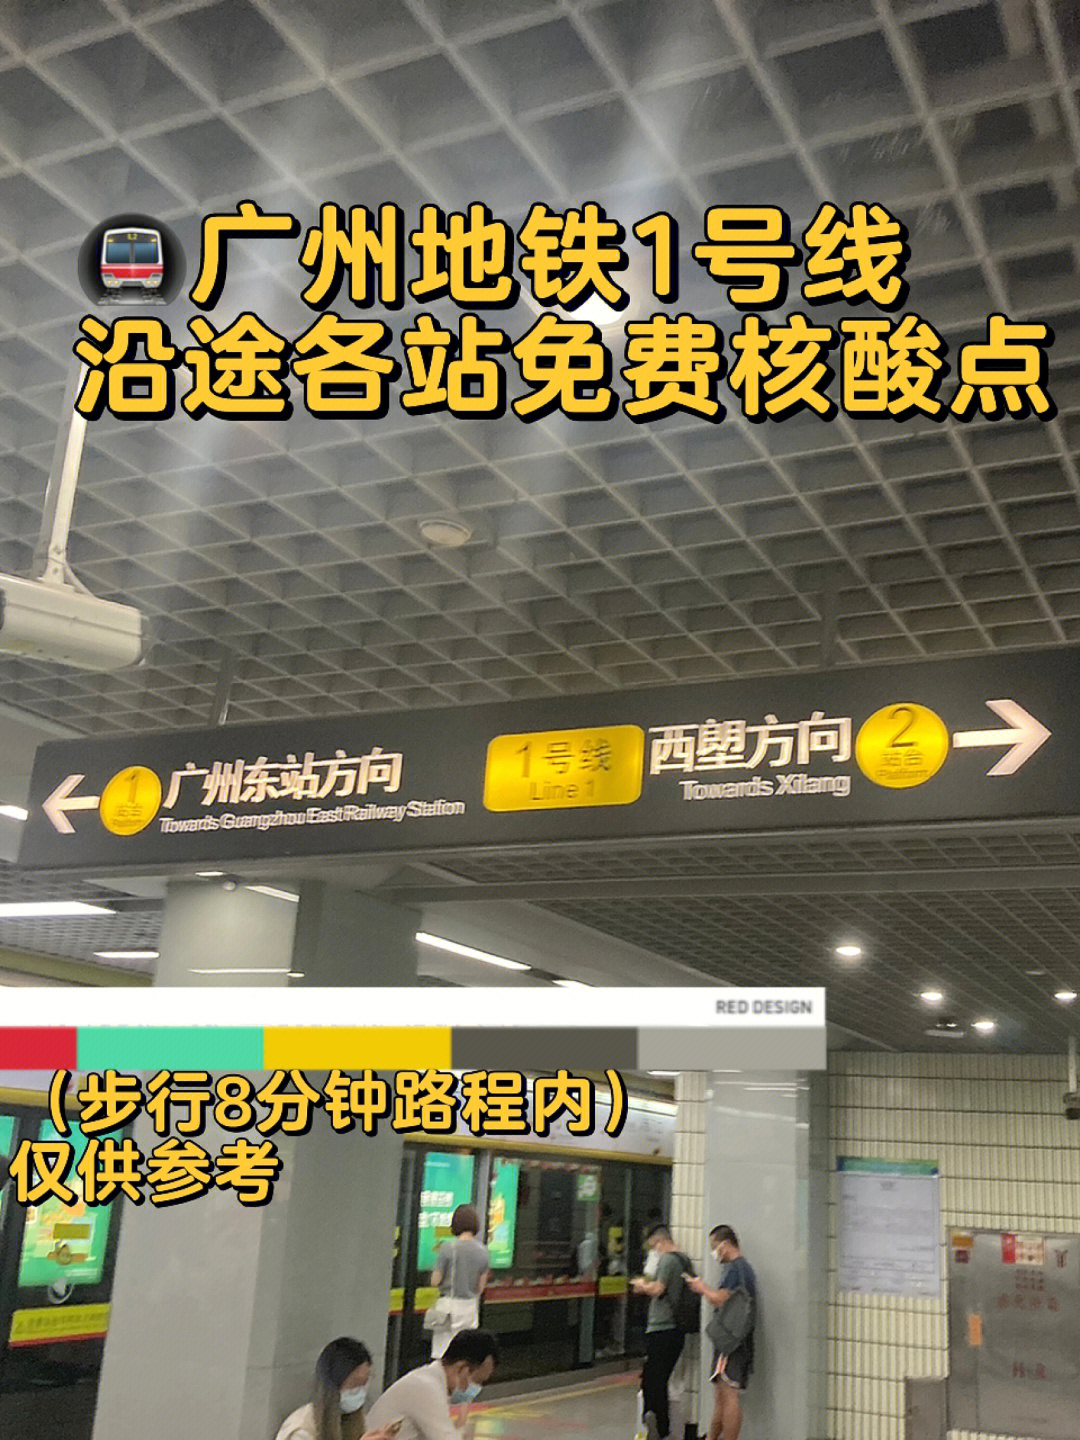 广州东站地铁几号线图片